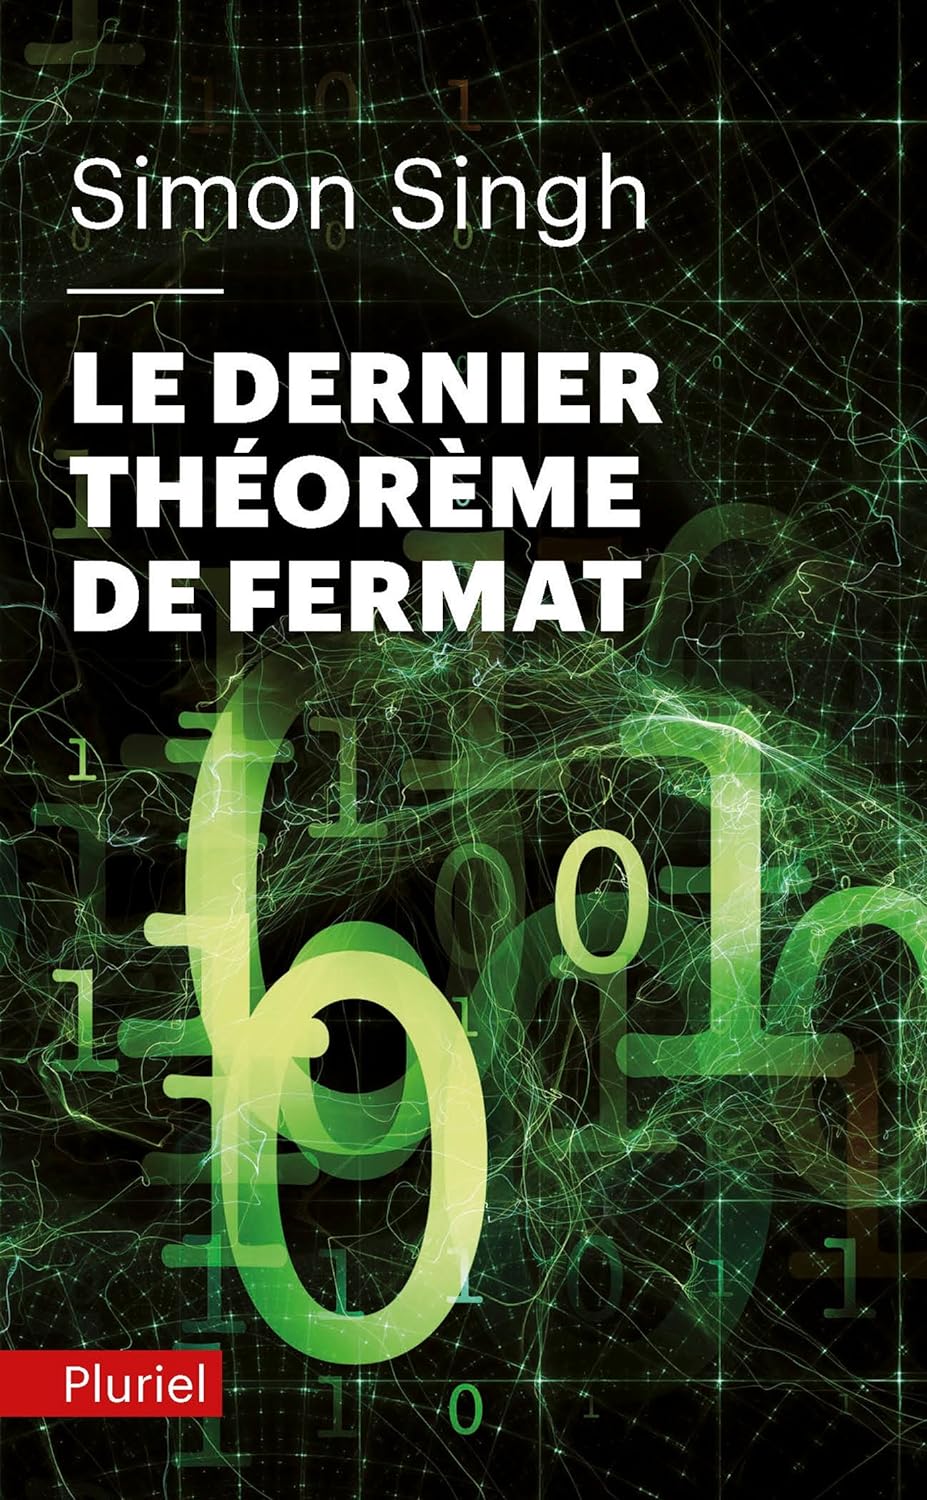 Simon Singh: Le Dernier Théorème de Fermat (Paperback, French language, 1999, Hachette Littérature)